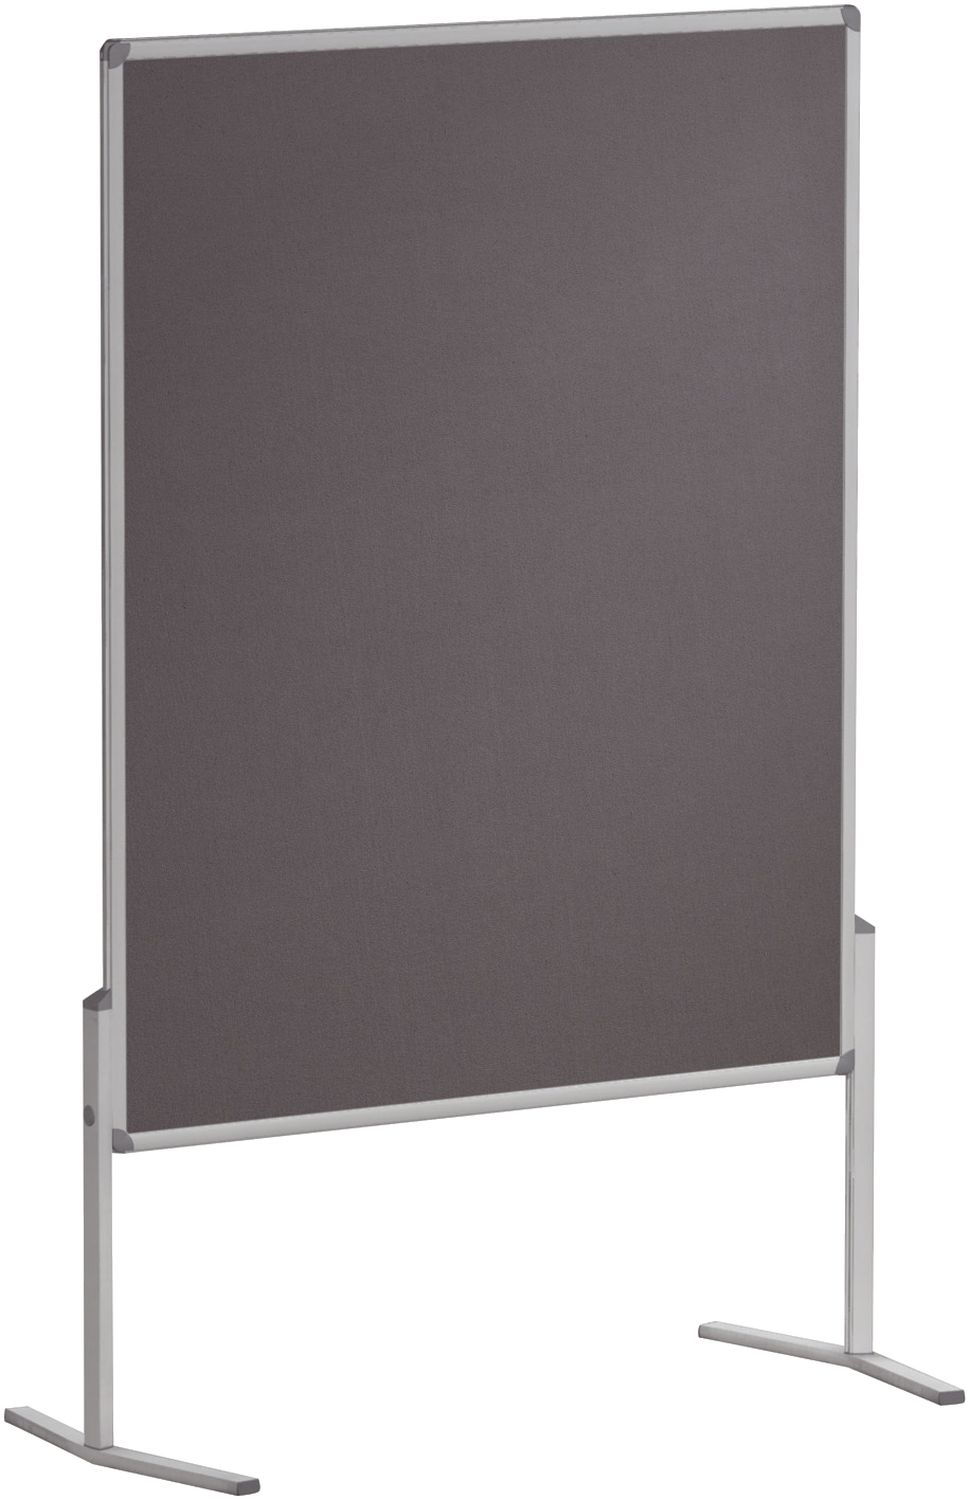 Moderationstafel PRO, 120 x 150 cm, grau/Filz, einteilig